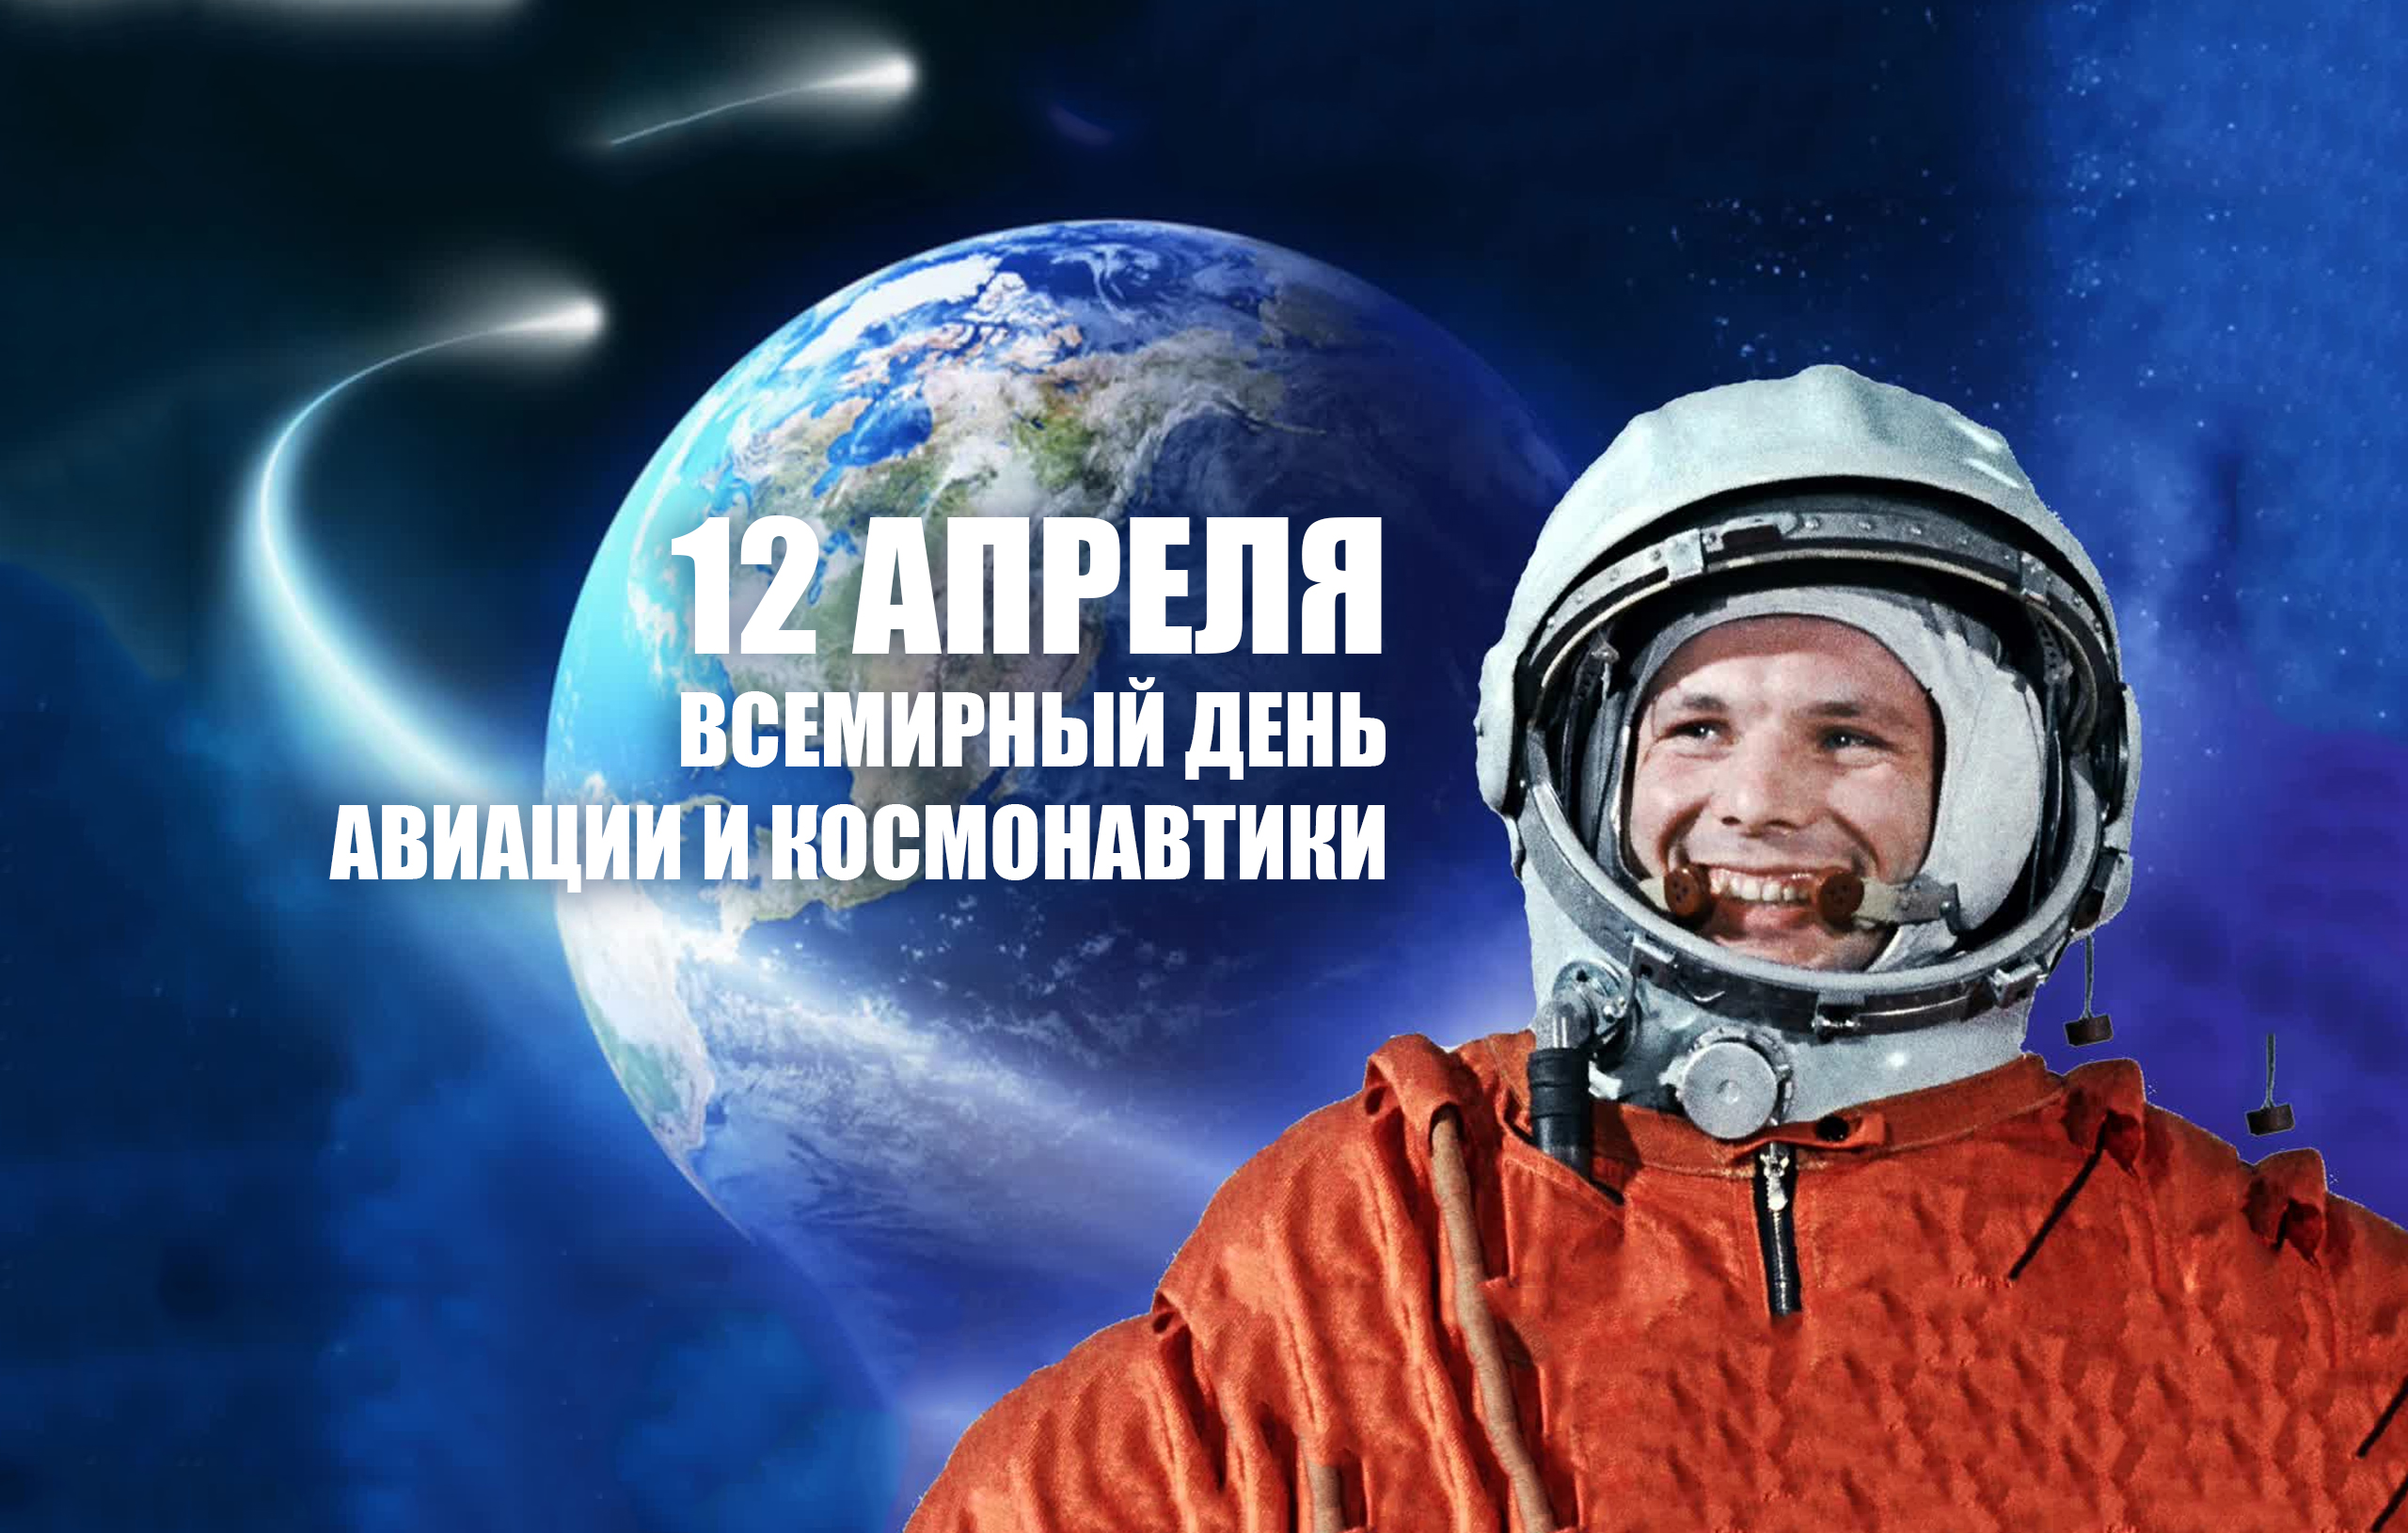 12 апреля – Всемирный день авиации и космонавтики